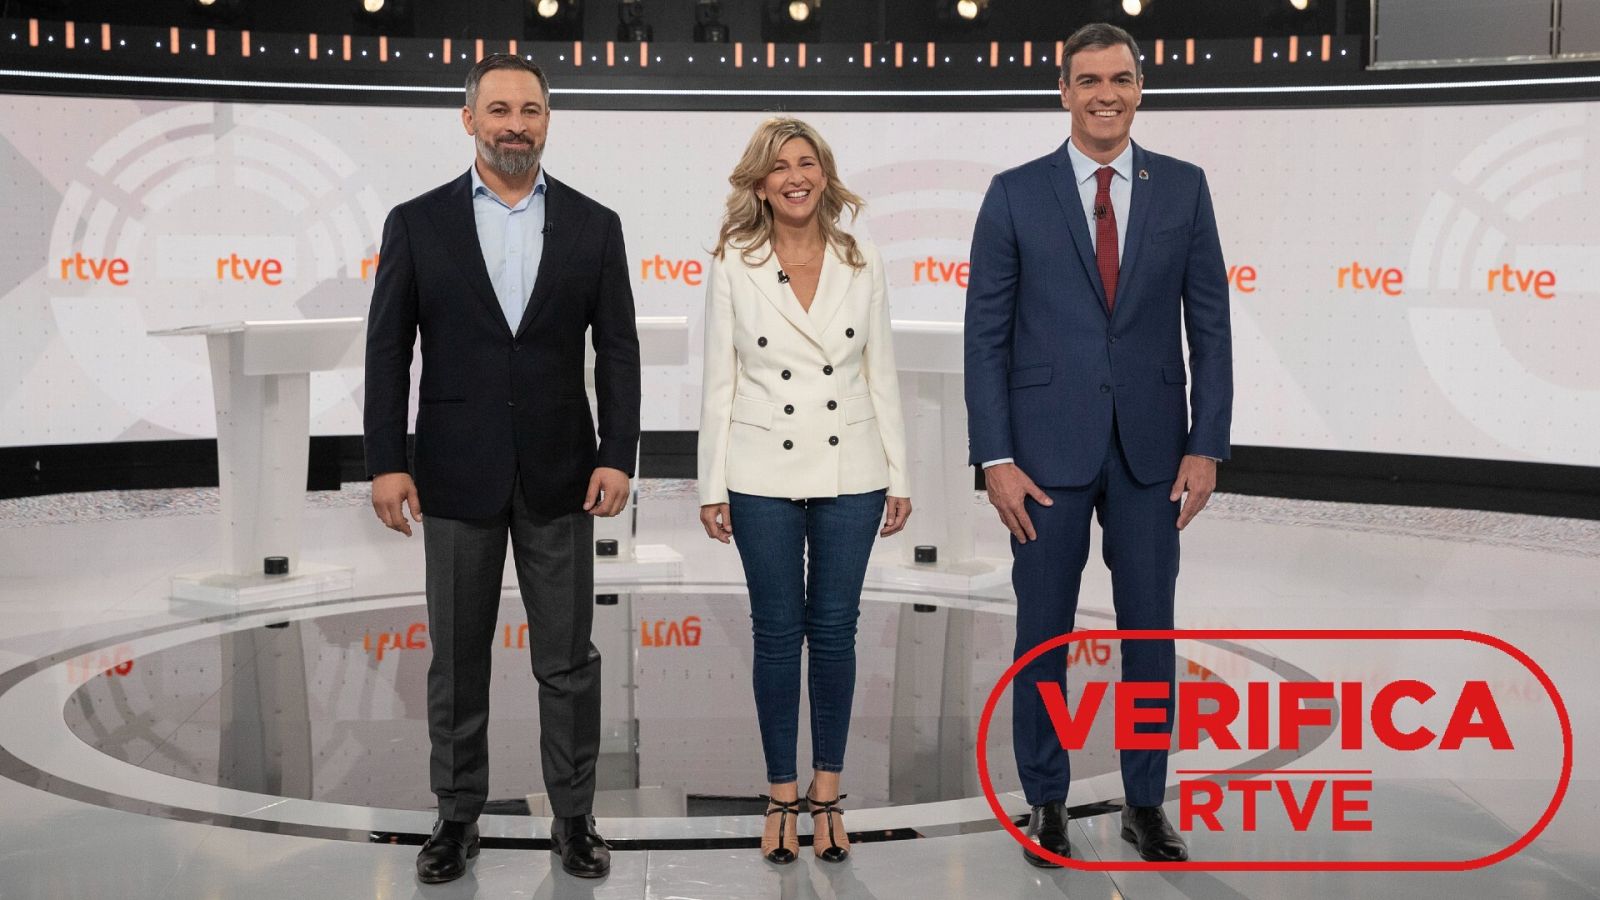 Los candidatos en el debate a tres de RTVE. De derecha a izquierda: Pedro Sánchez, Yolanda Díaz y Santiago Abascal. Con el sello VerificaRTVE en rojo.